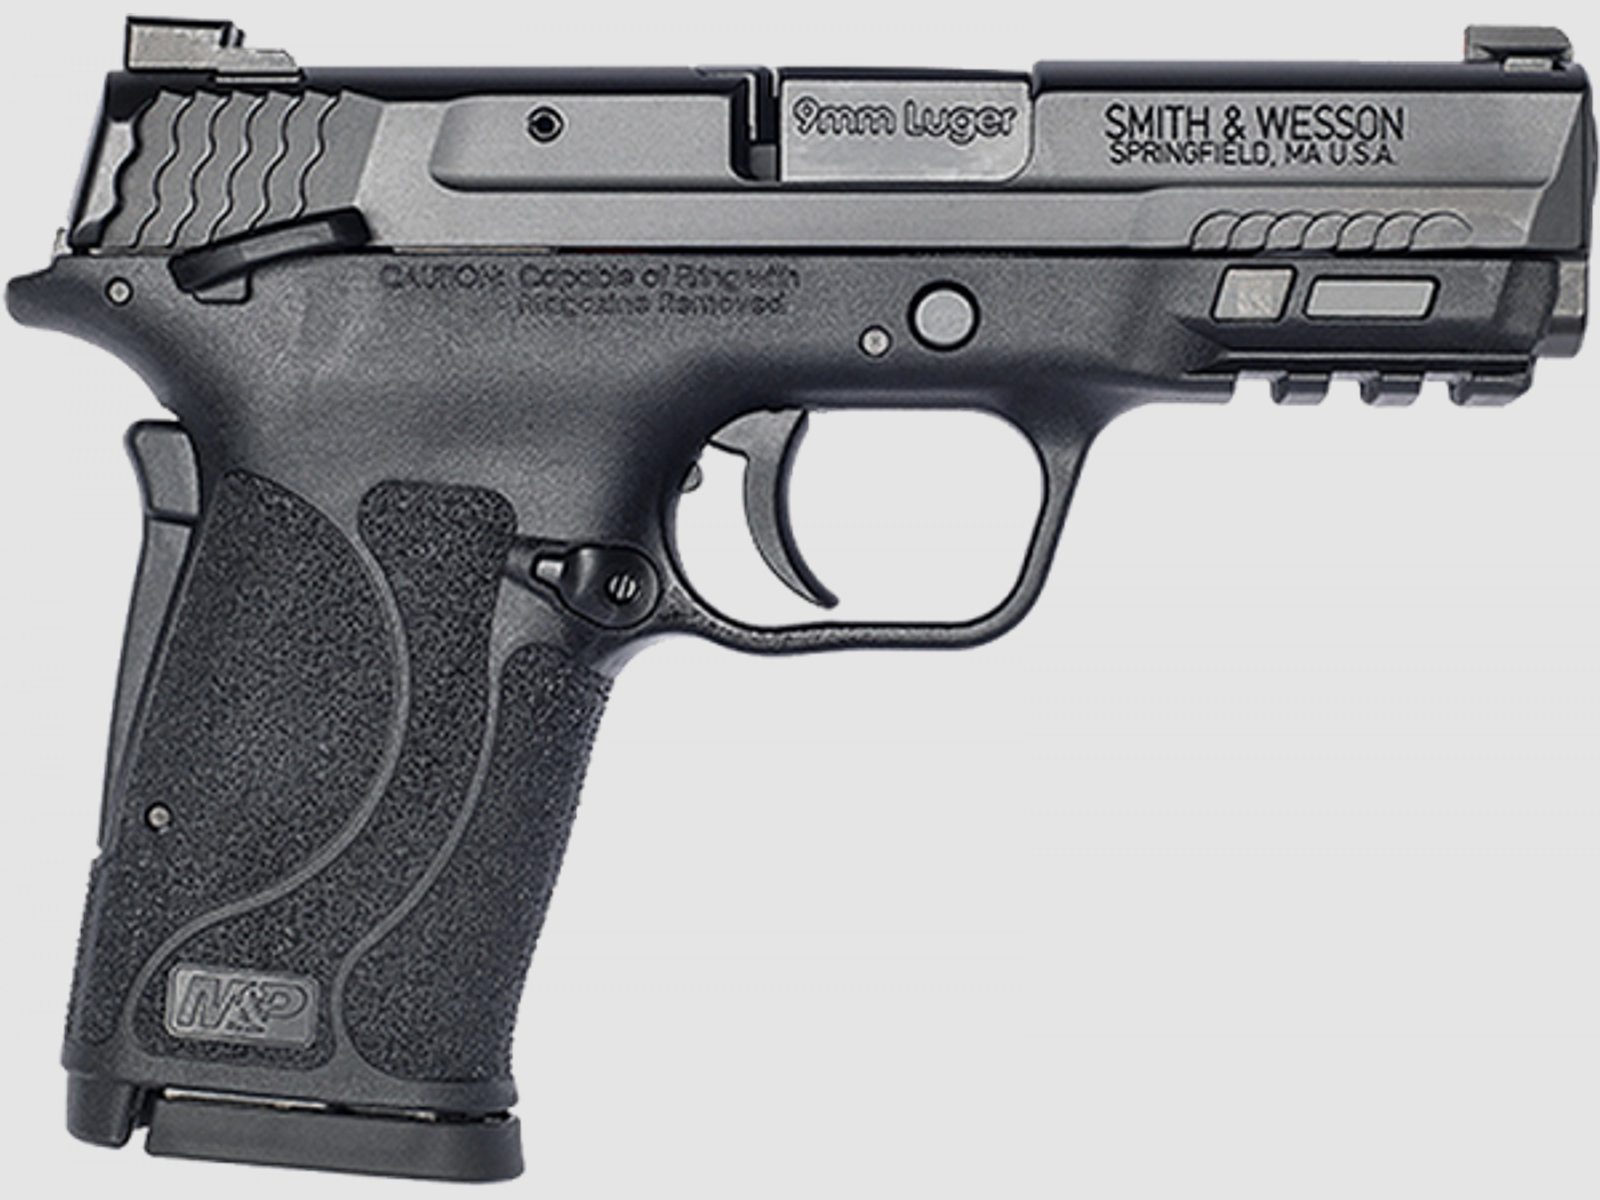 Smith & Wesson M&P 9 Shield EZ Pistole